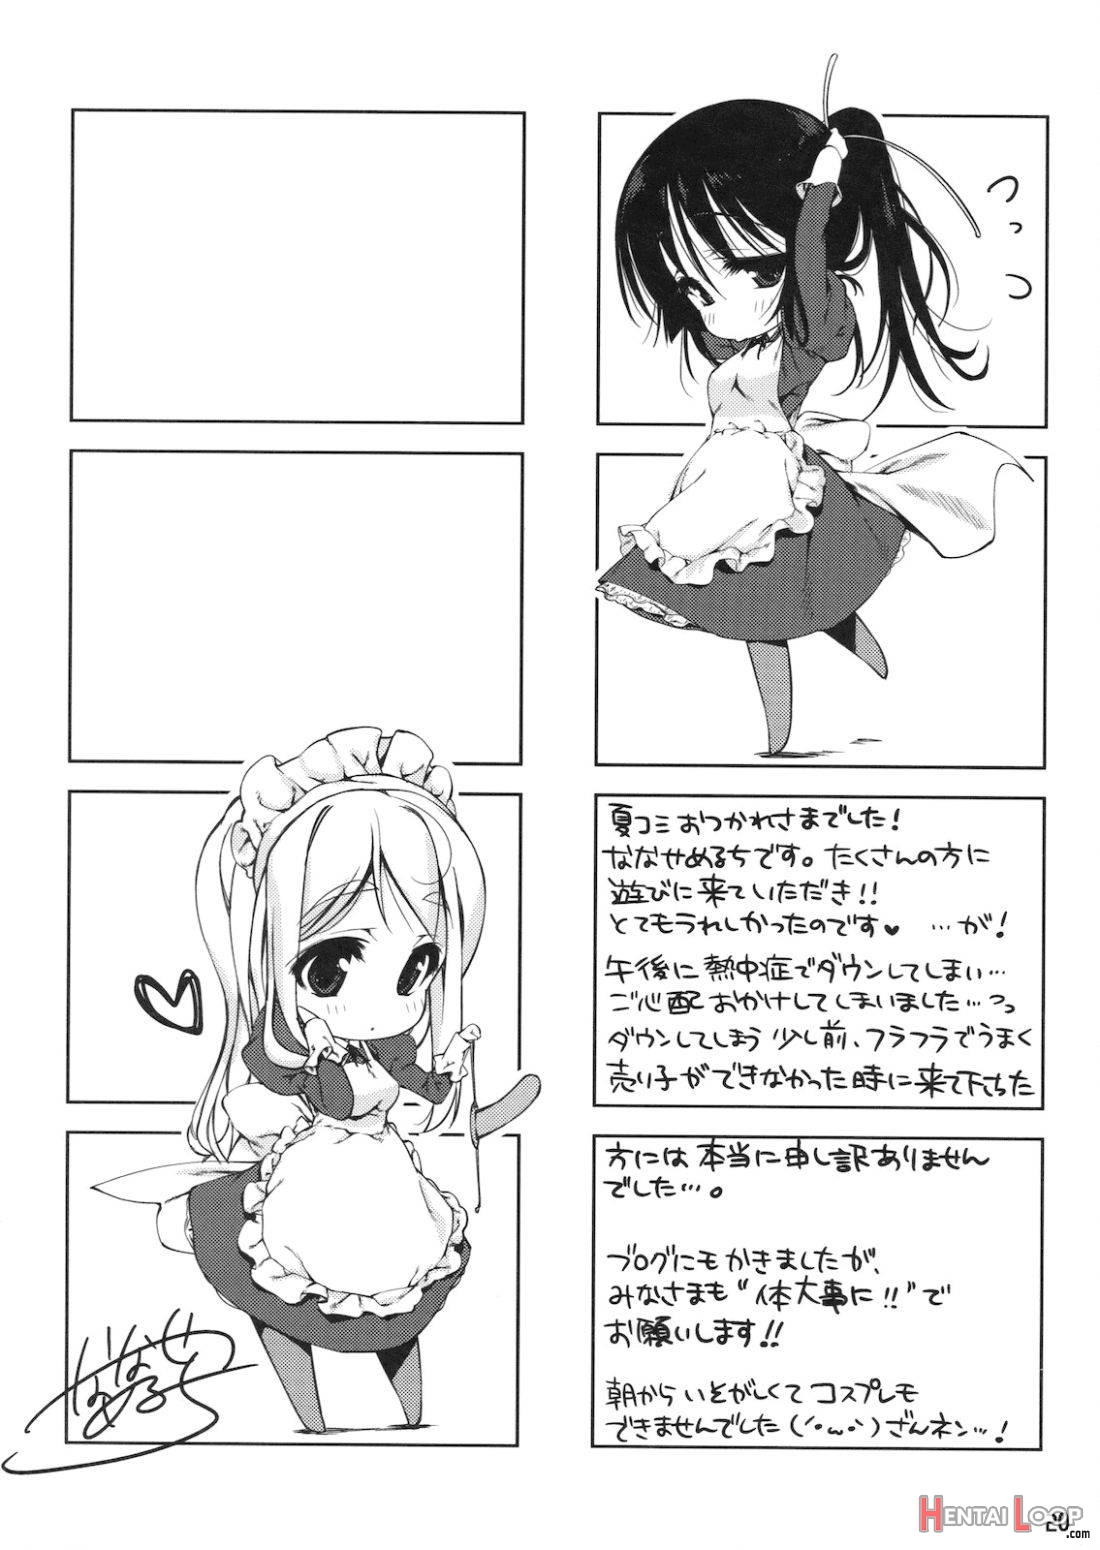 Mio-tan! 6 Mugi-chan to page 16